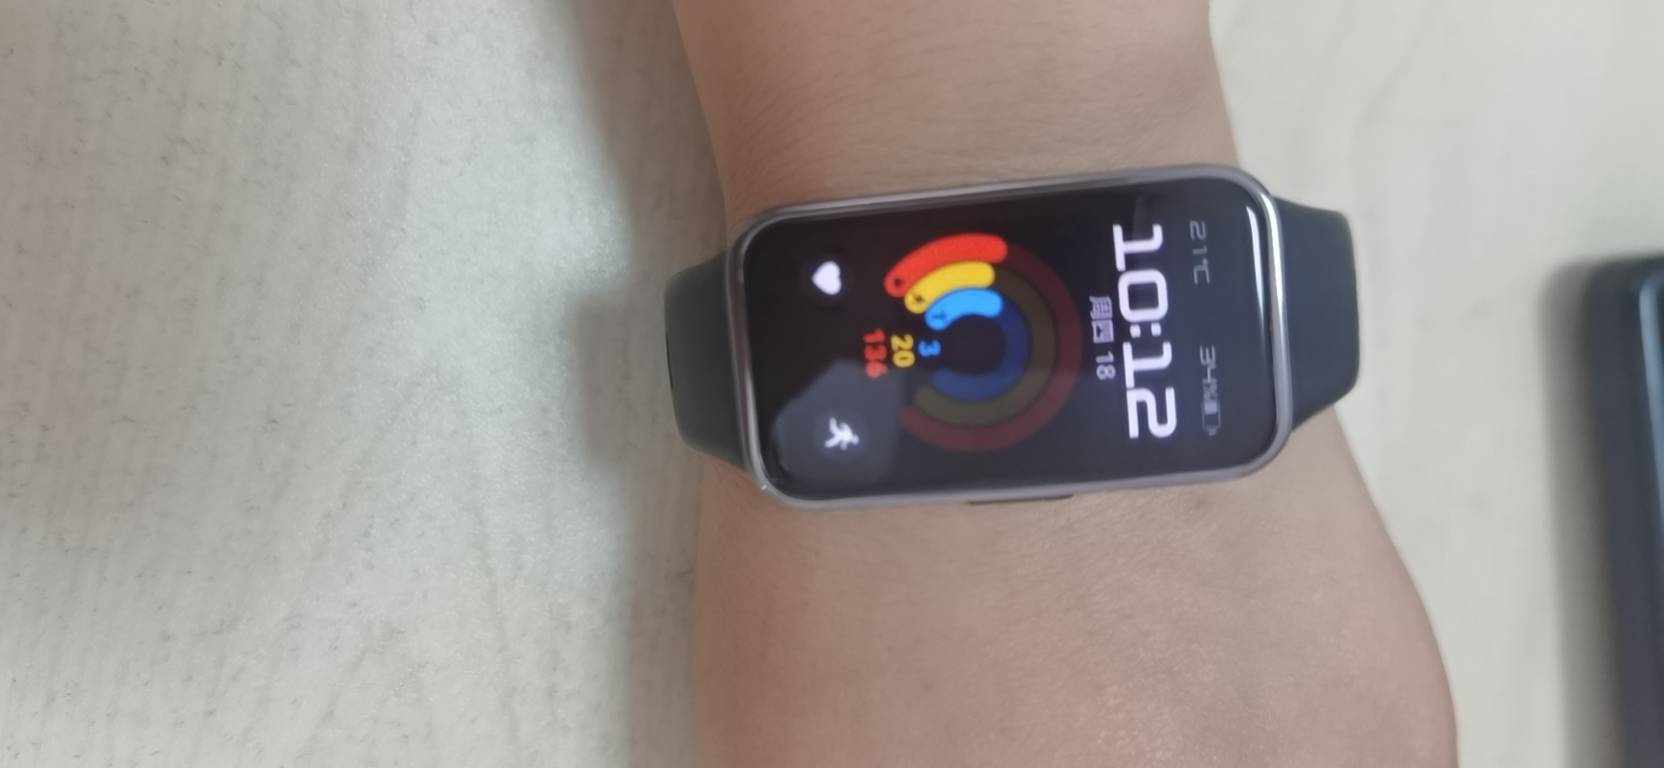 华为/HUAWEI 手环9 NFC版 星空黑 智能手环 运动手环 全天舒适佩戴 睡眠健康管理 心率失常提醒 强劲续航 手环8升级晒单图